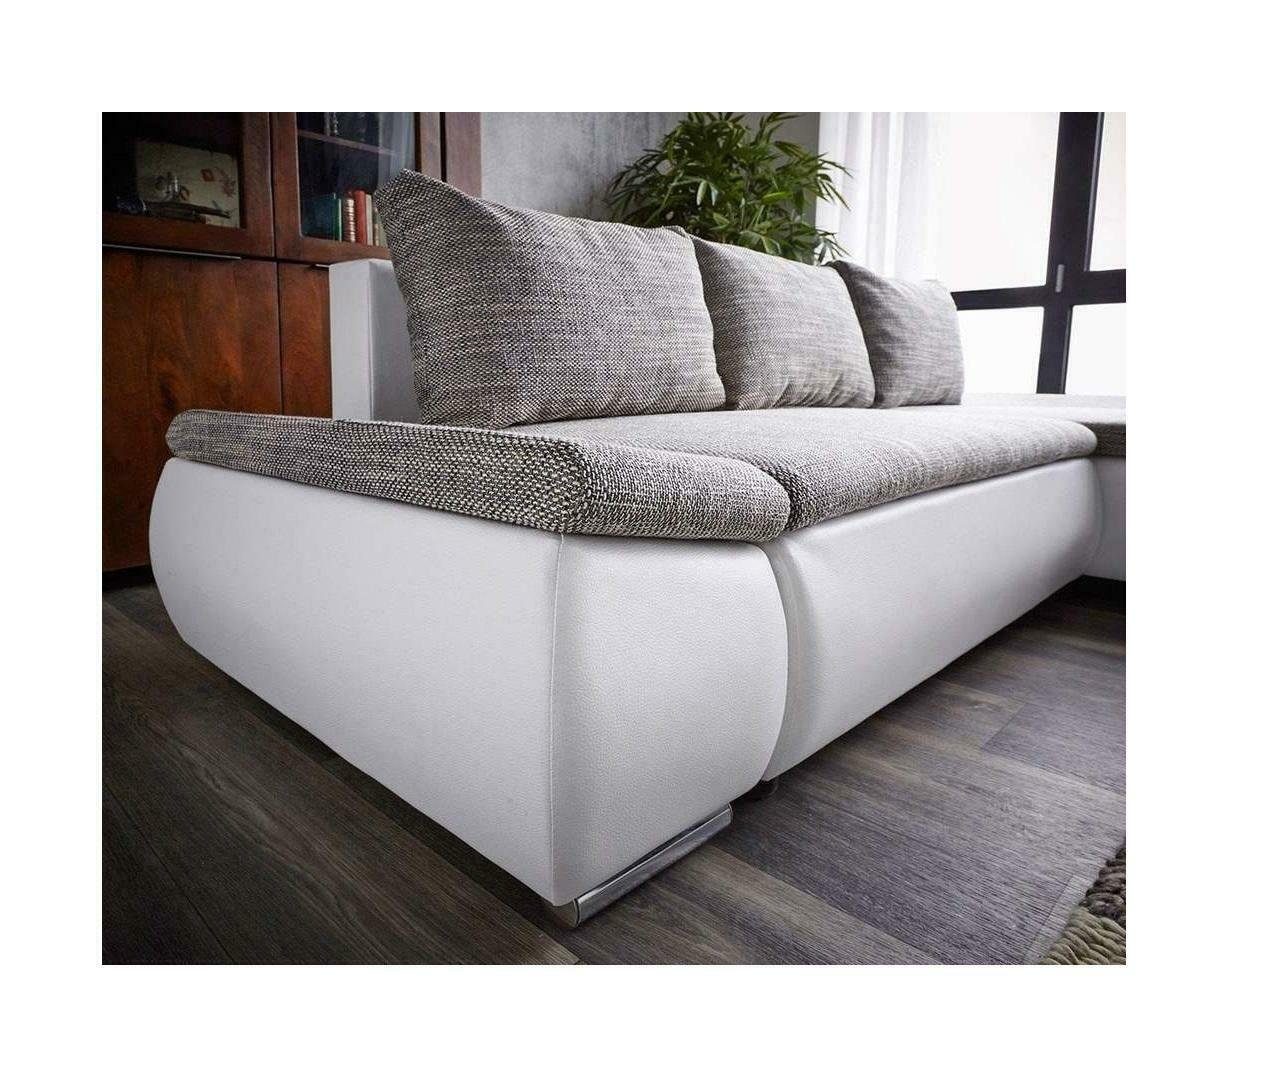 JVmoebel Sofa Luxus Moderner Dreisitzer Couch mit Bettfunktion Polster Neu, Made in Europe